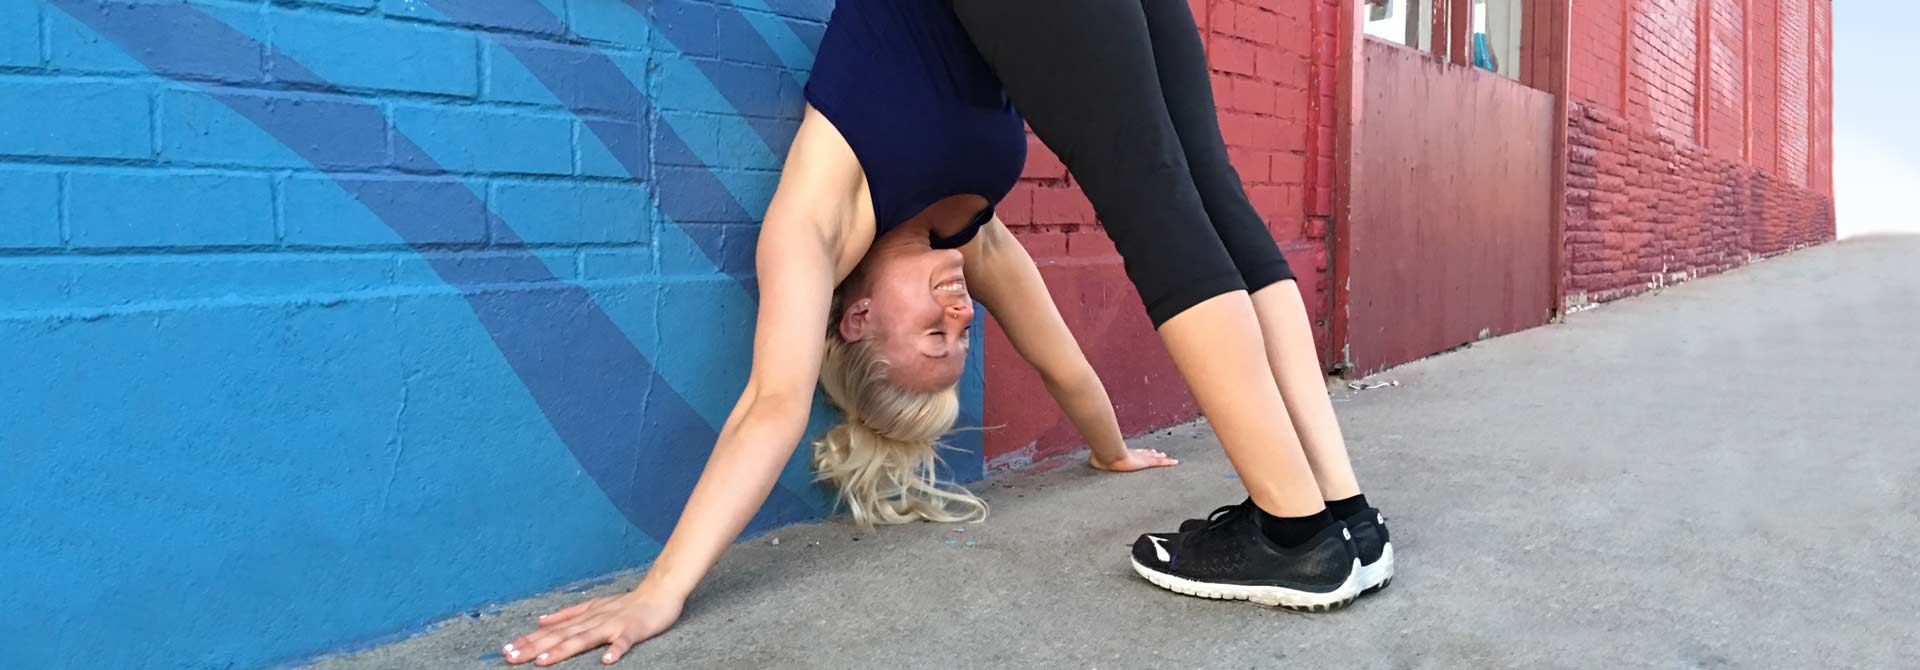 Atleta de GymnasticBodies demuestra un estiramiento de cuerpo entero contra la pared.